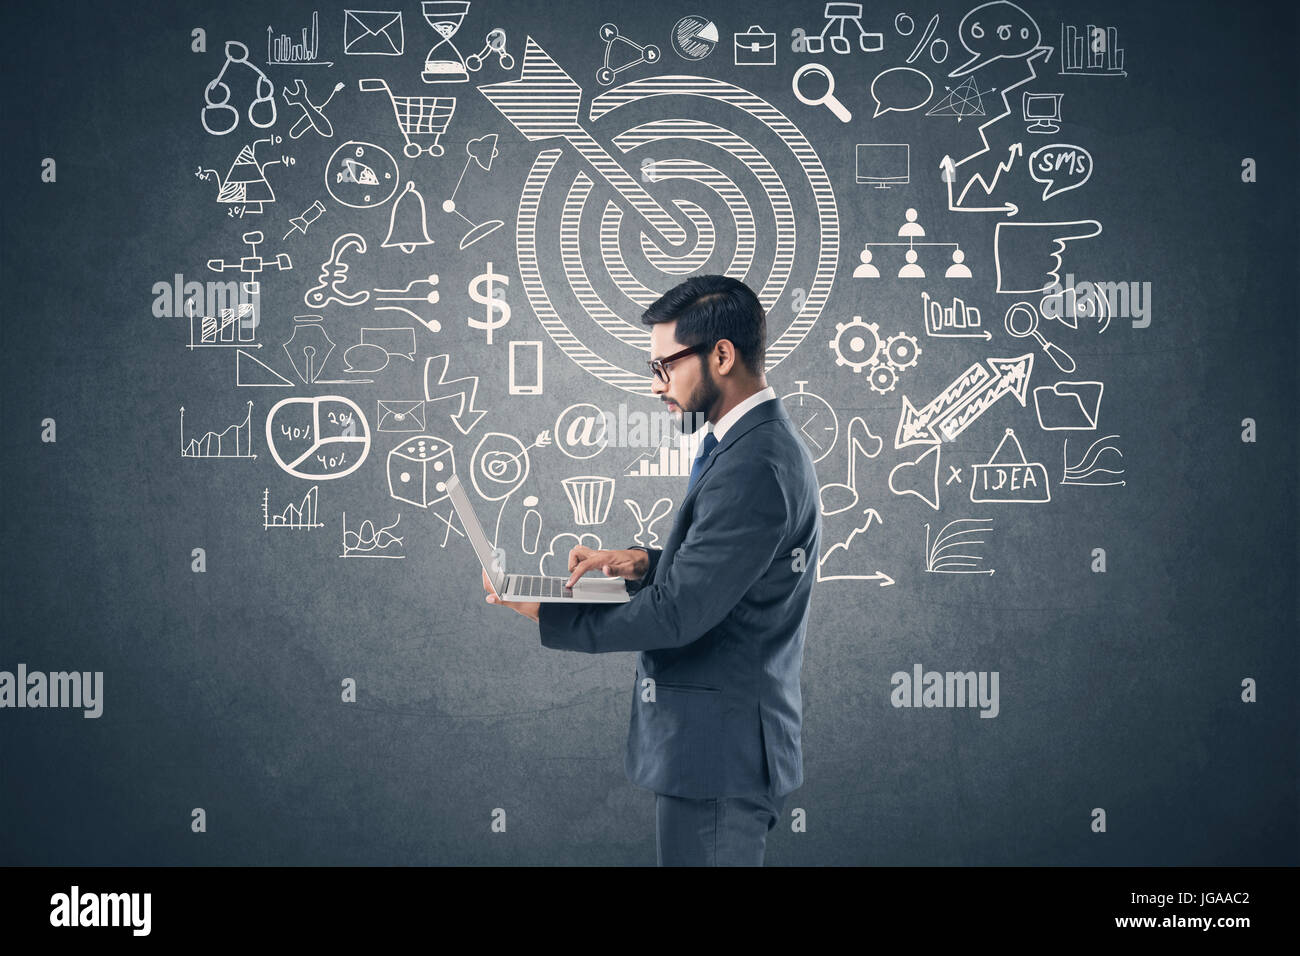 Businessman using laptop in front of blackboard avec icônes d'affaires et de technologie Banque D'Images